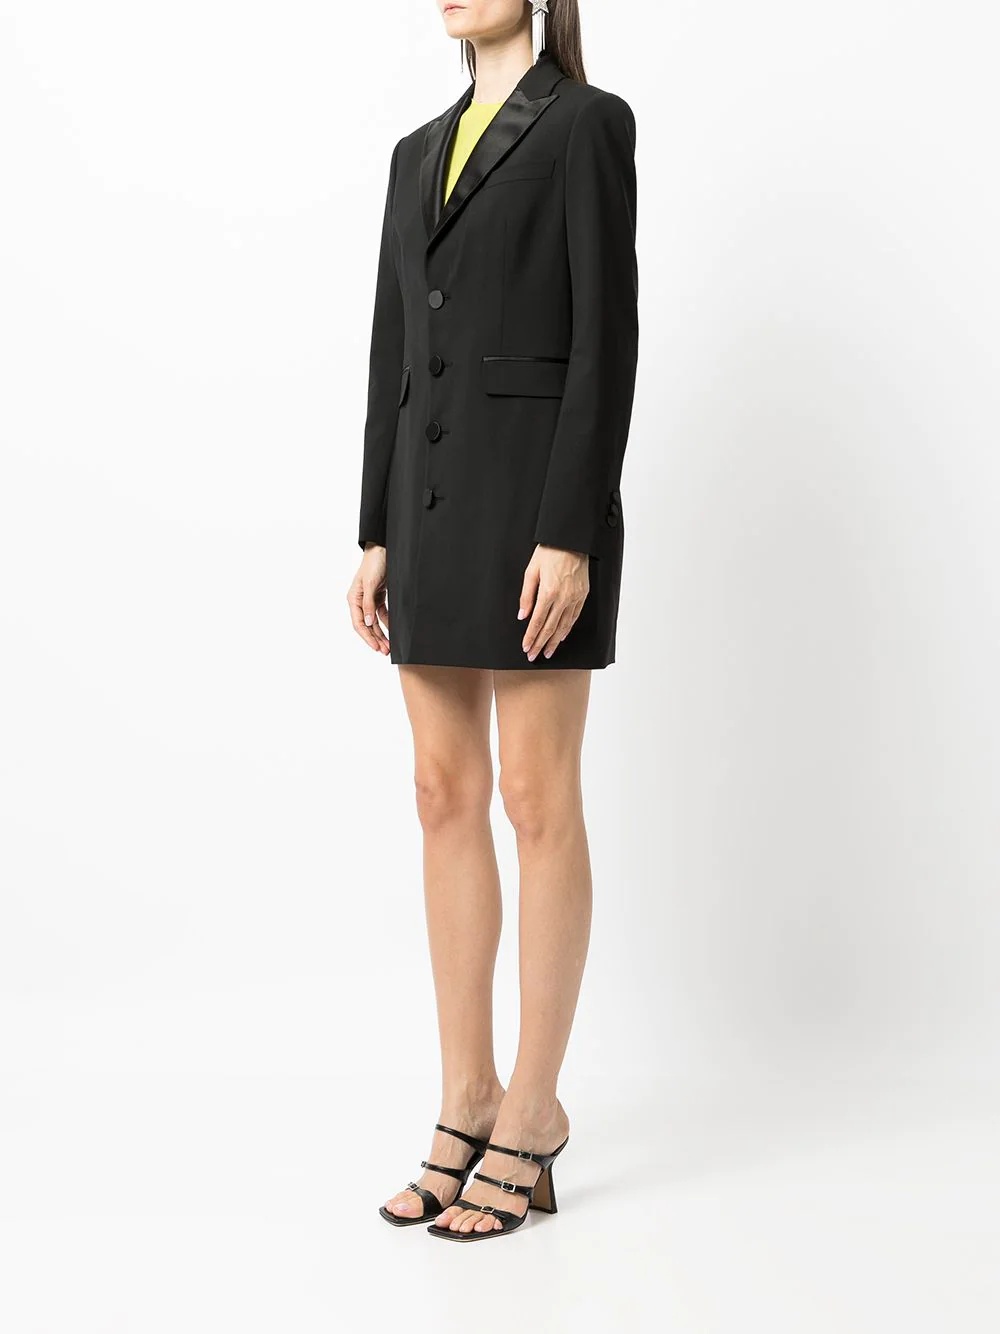 suit jacket mini dress - 3